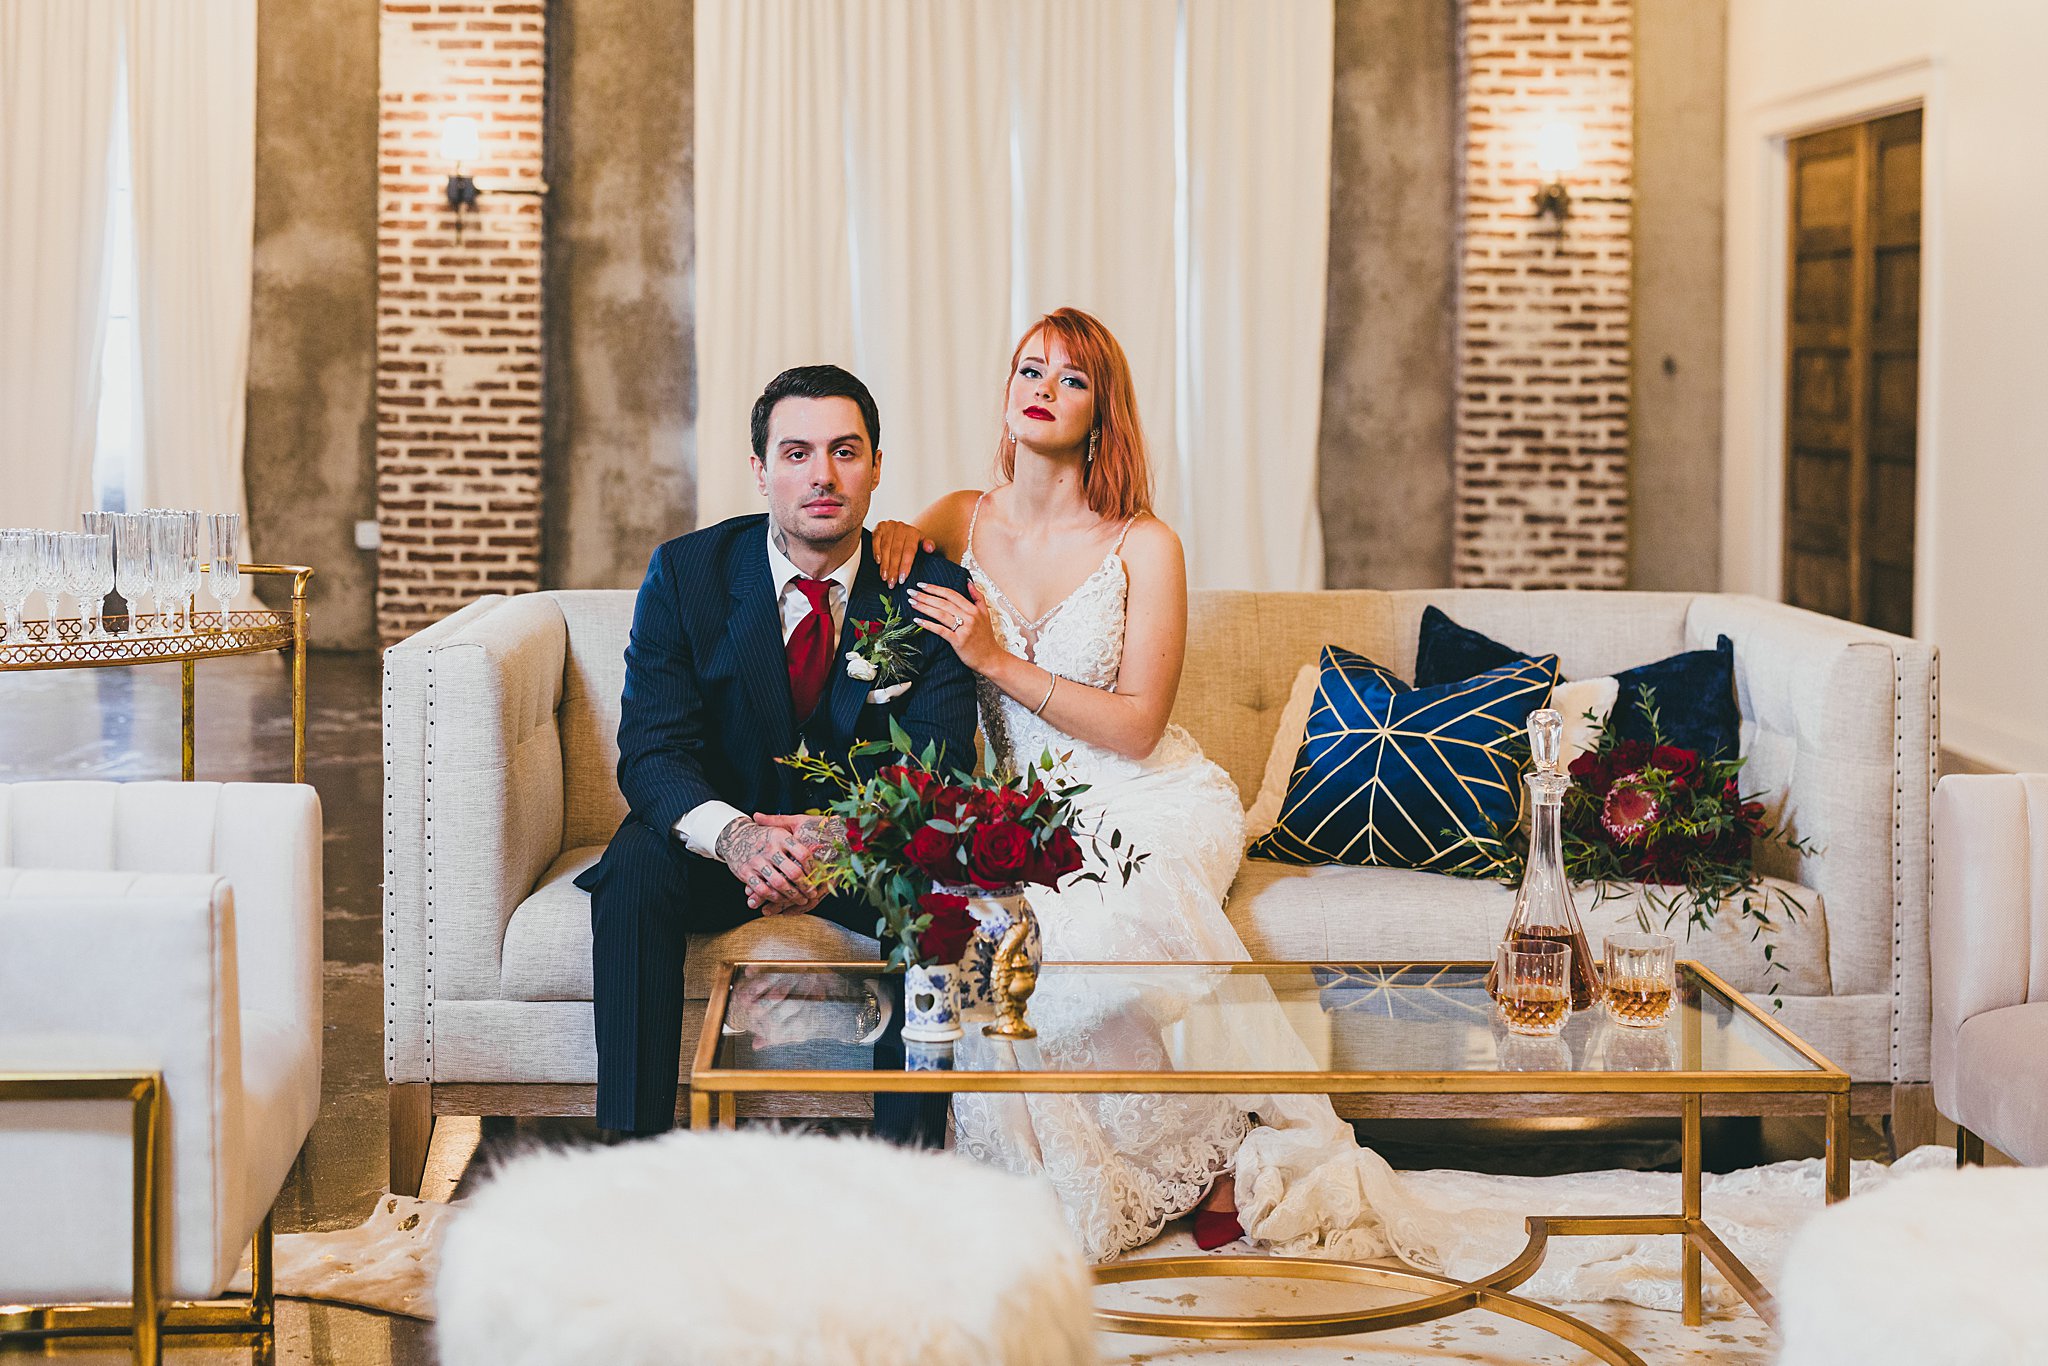 Styled Shoot Hollywood Regency Wedding Inspiration Atlanta Photographers